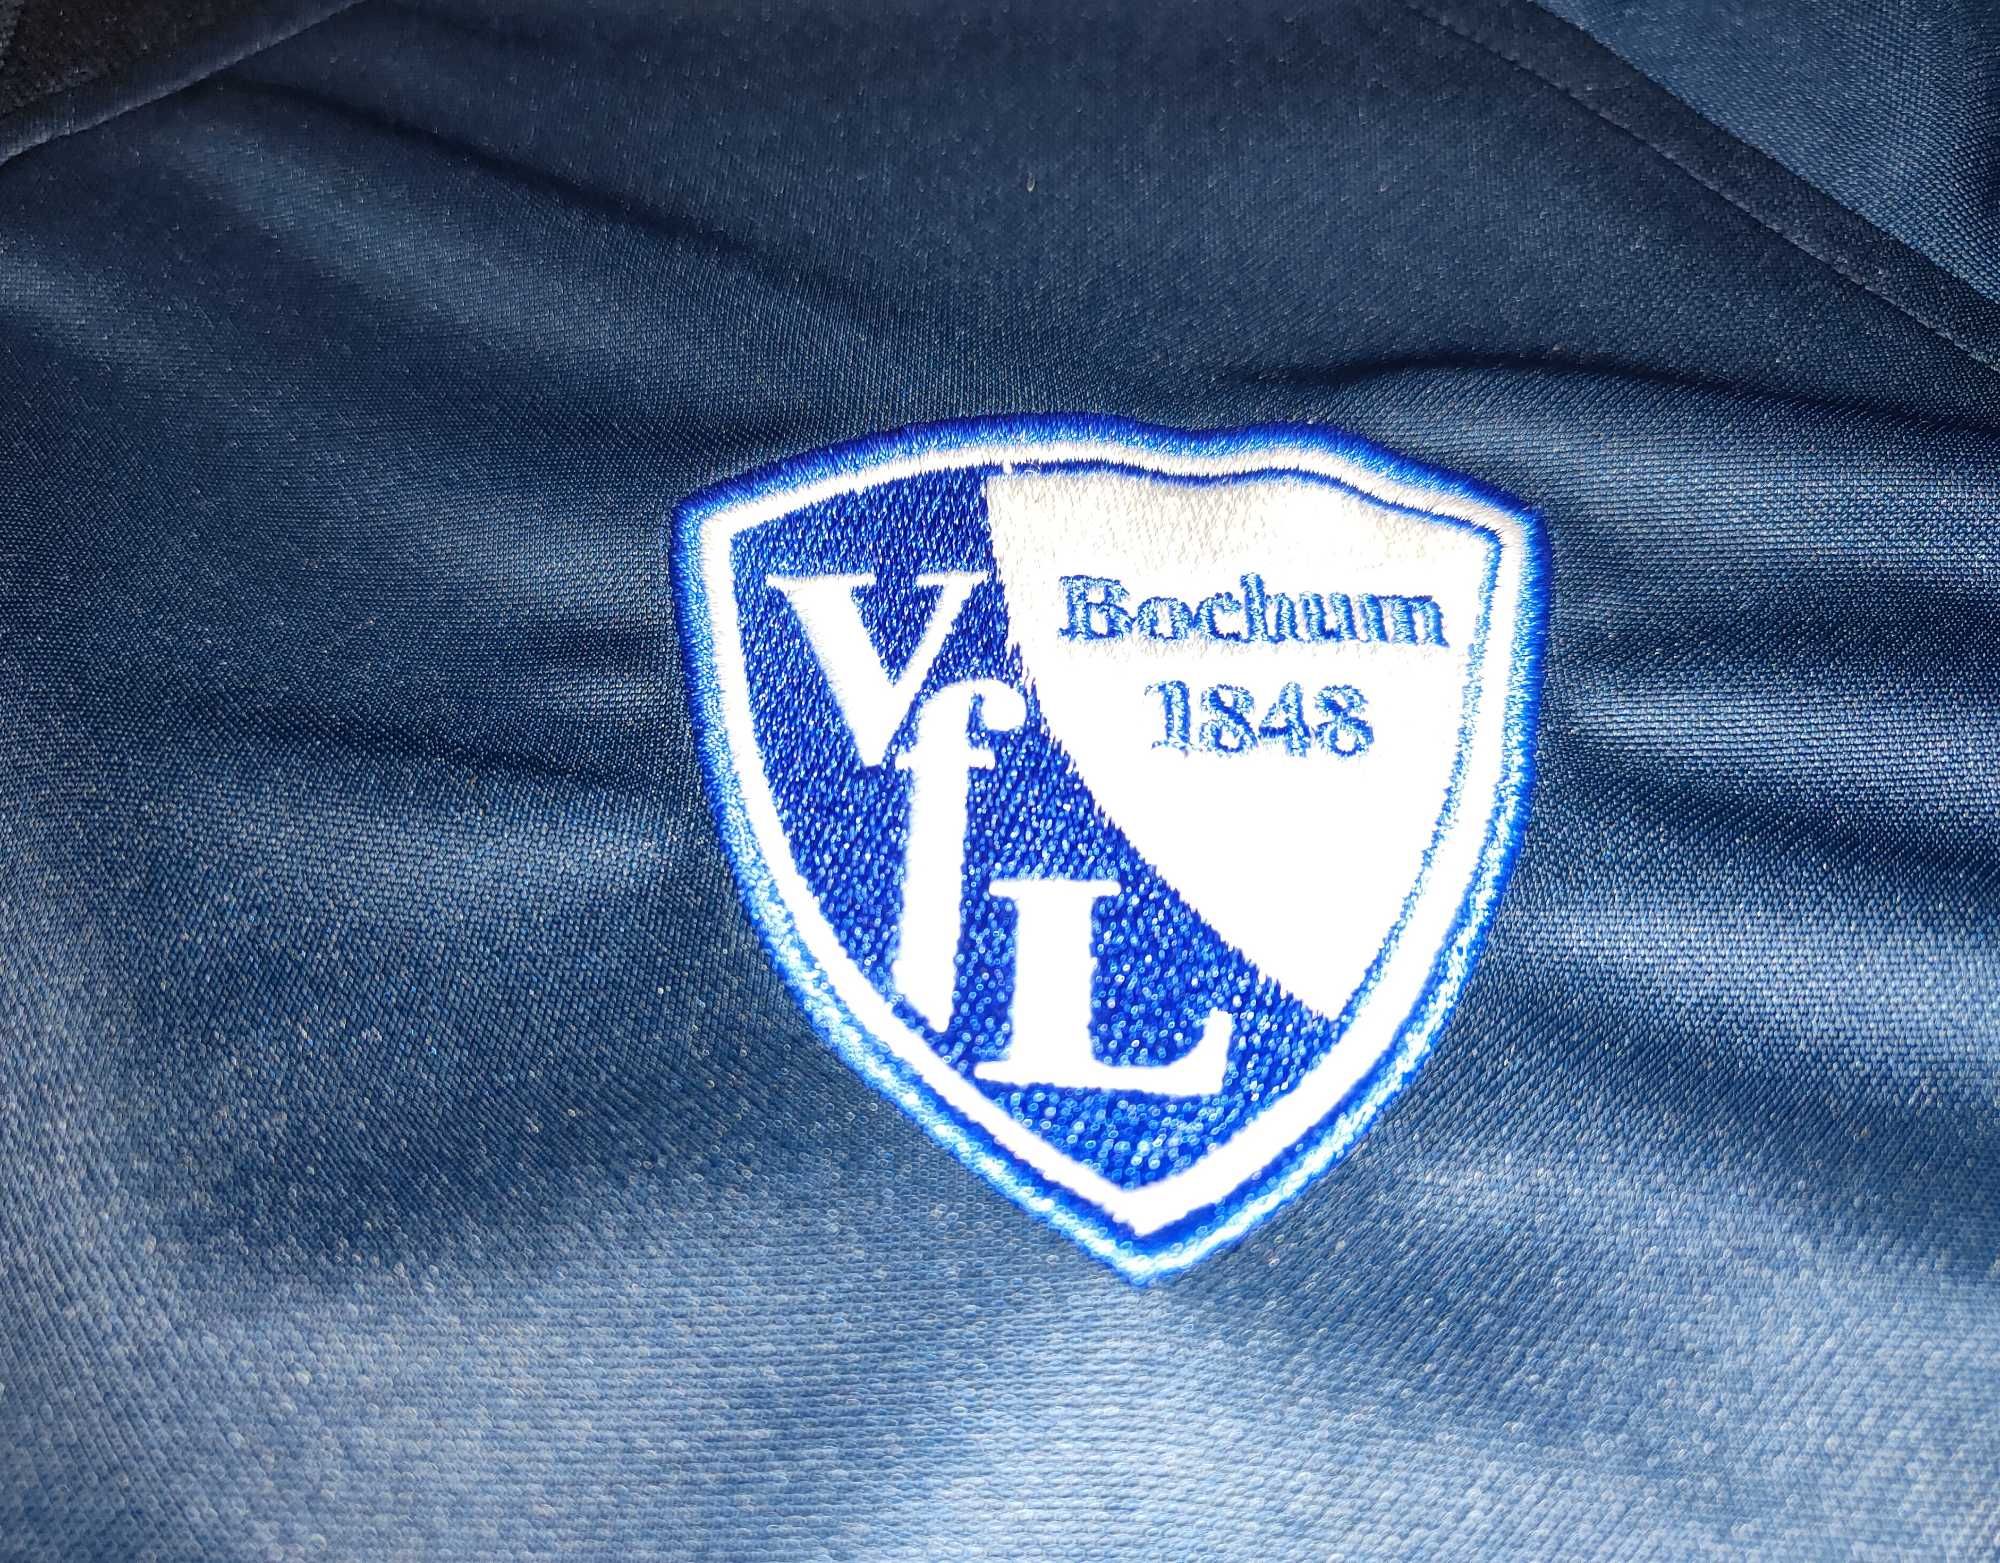 NIKE koszulka sportowa piłkarska FVL BOCHUM roz XXL